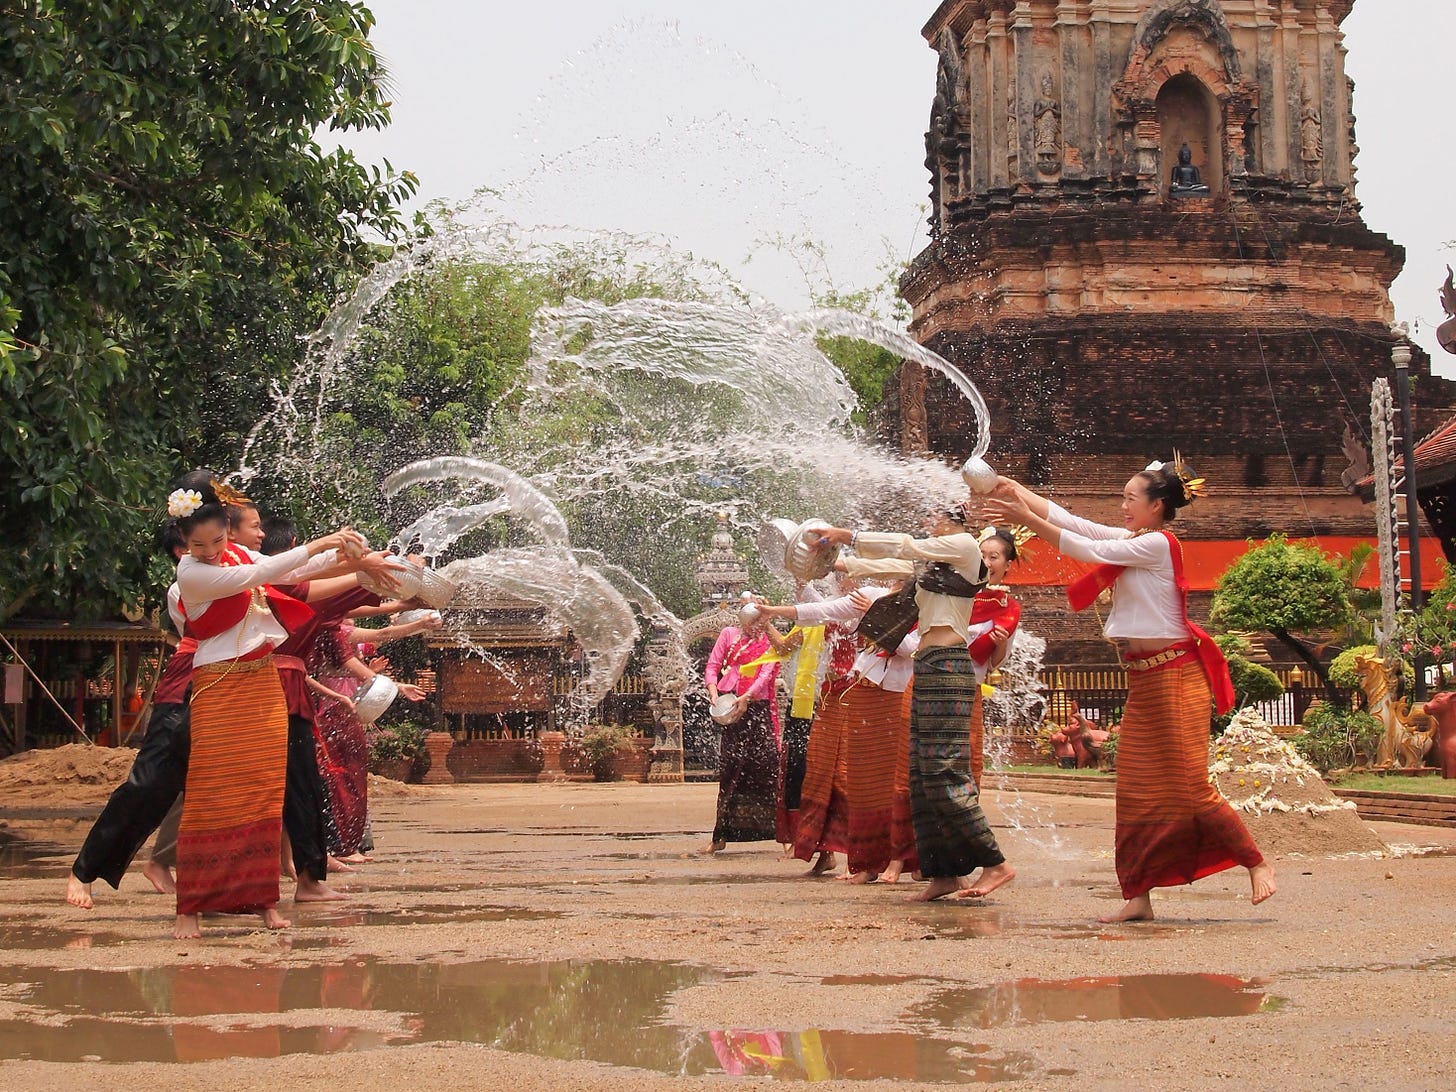 จังหวัดเชียงใหม่ (Chiang Mai) | Songkran festival, Thailand new year ...